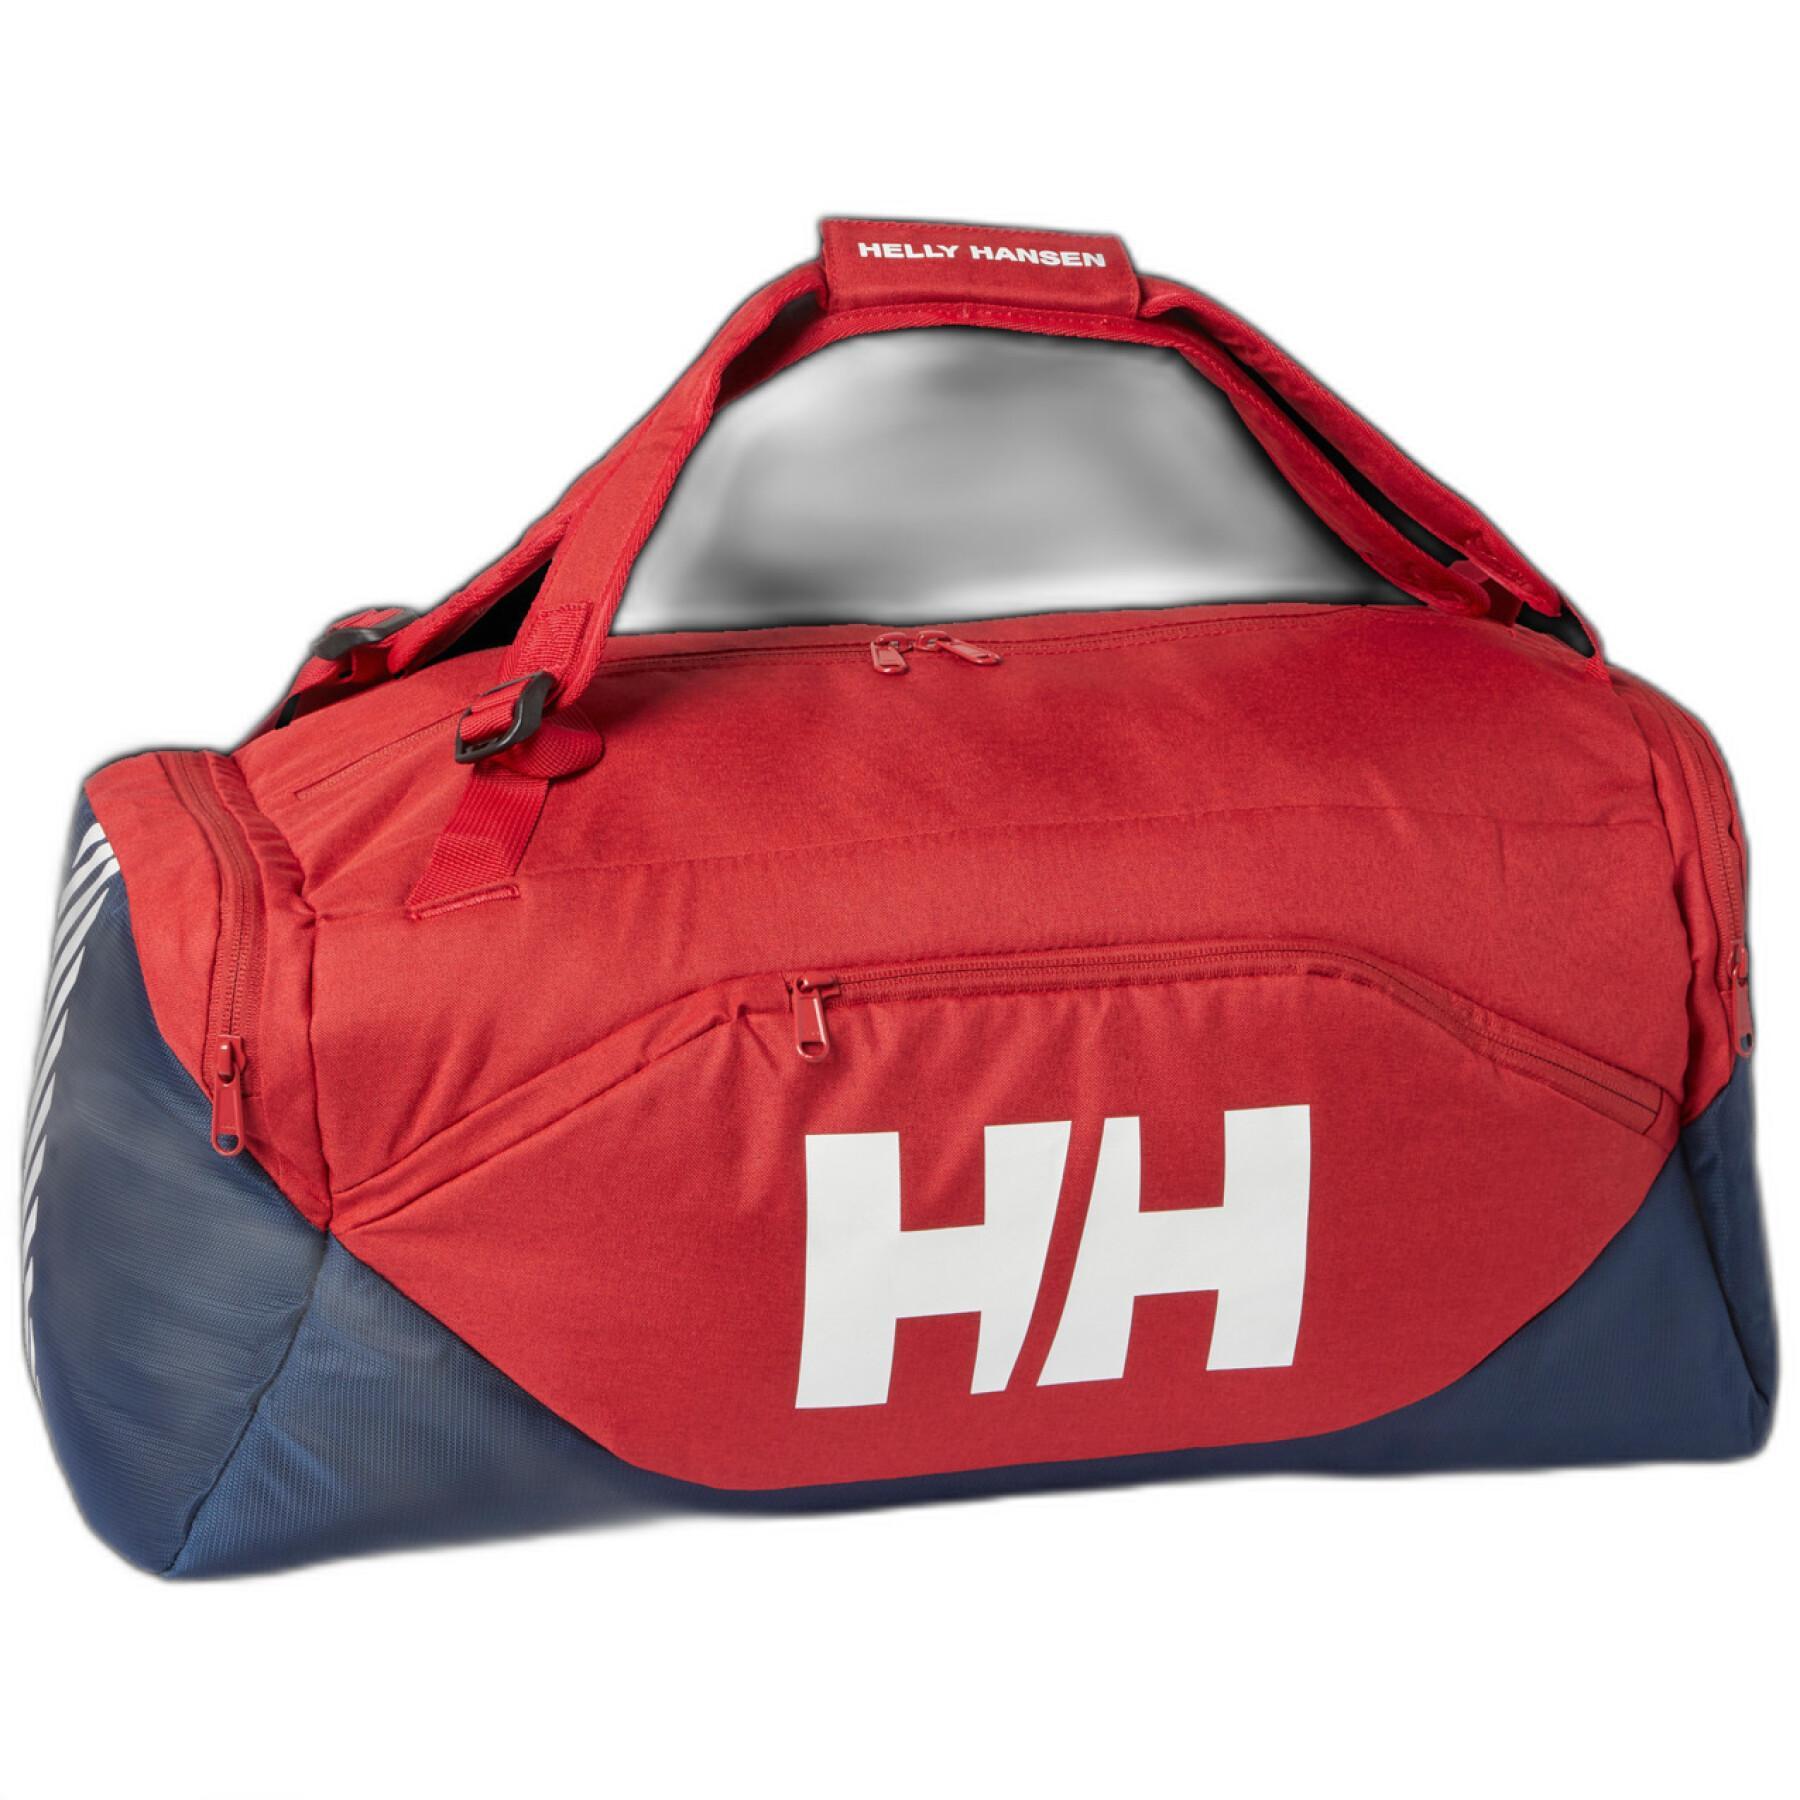 Sports bag Helly Hansen bislett